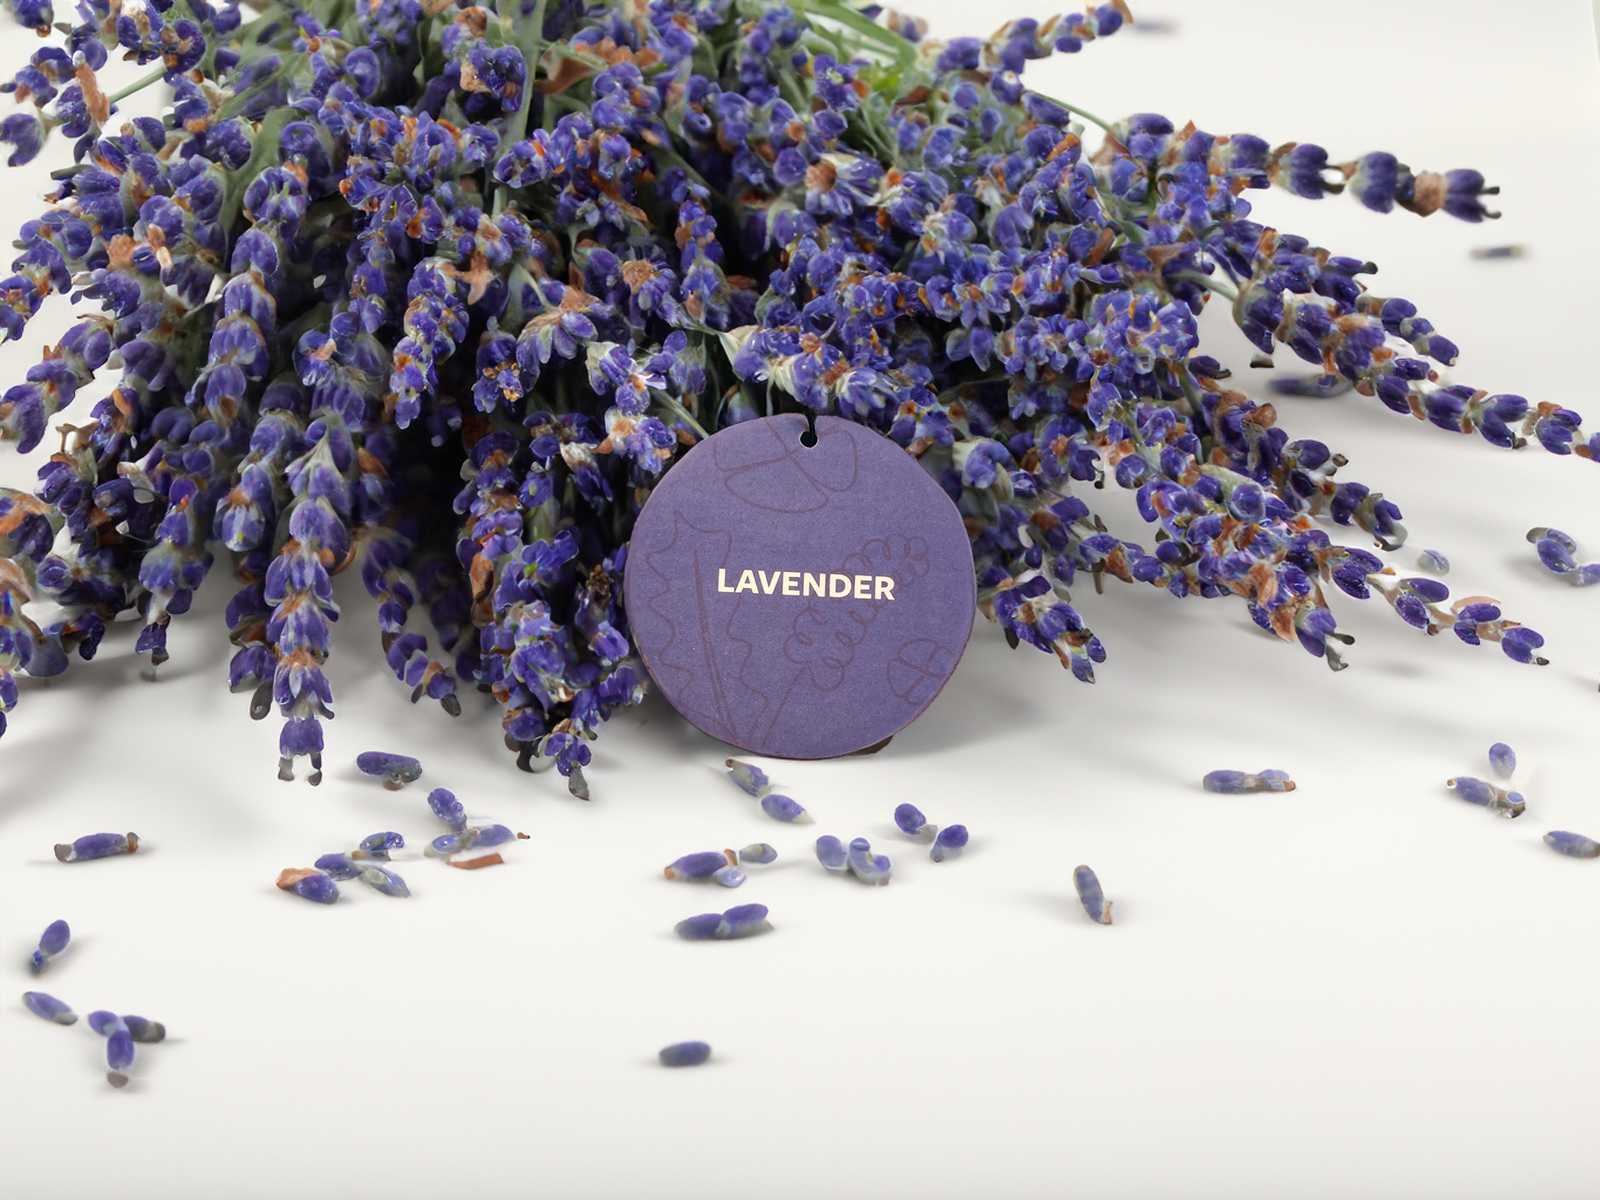 Lavender Car Freshener with lavender